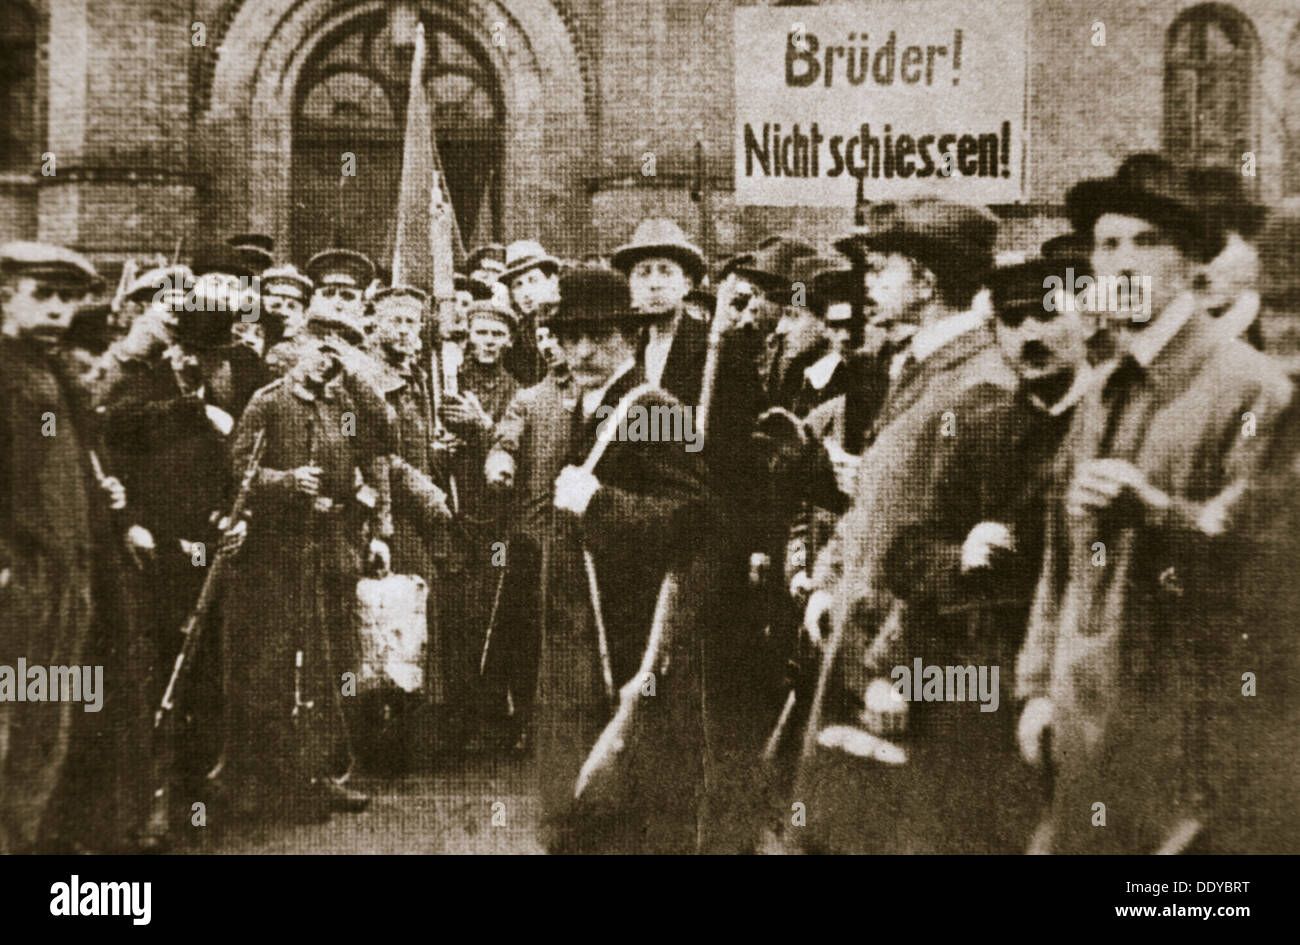 "Brüder, nicht schießen!", Plakat während der deutschen Revolution, Berlin, c1918-c1919. Künstler: unbekannt Stockfoto